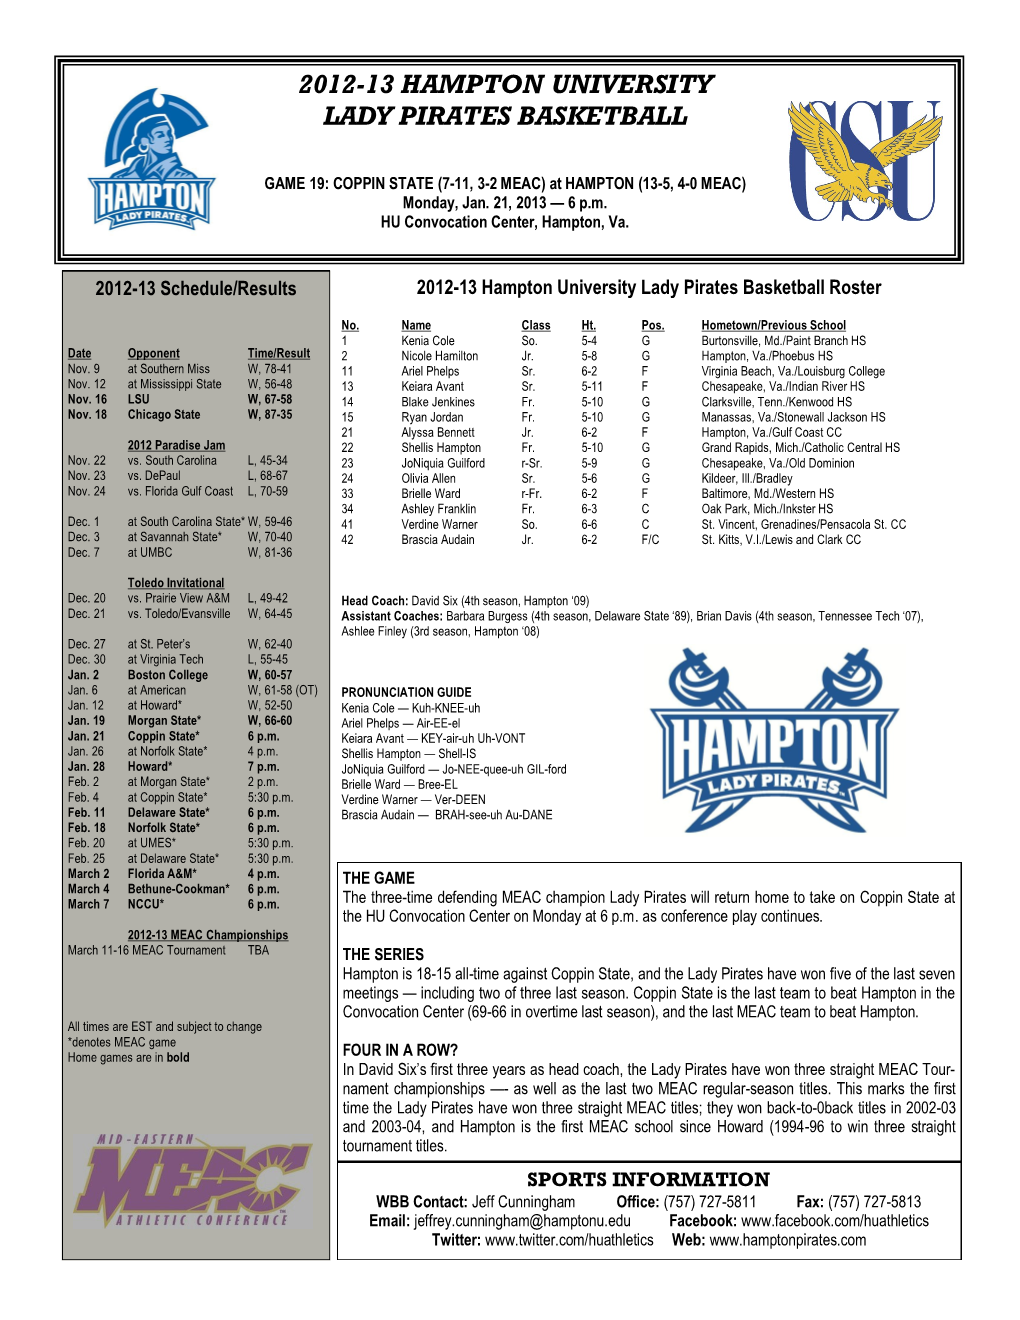 2012-13 Hampton University Lady Pirates Basketball